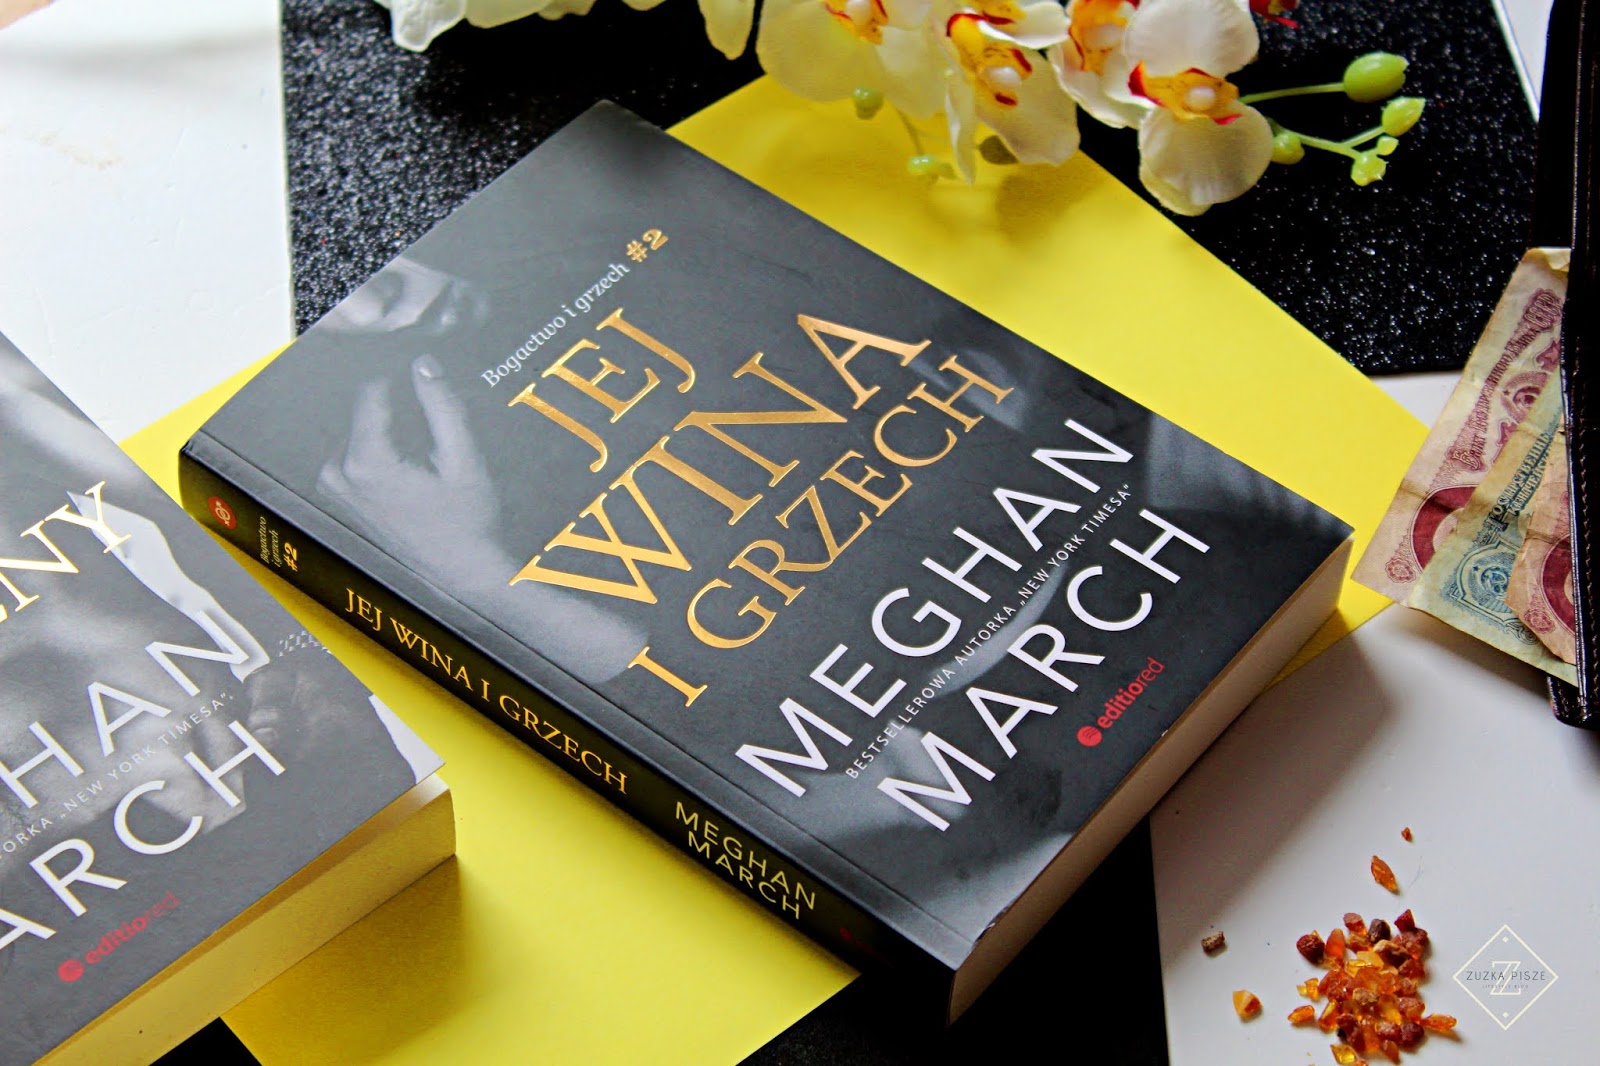 Meghan March "Jej wina i grzech" - recenzja książki 